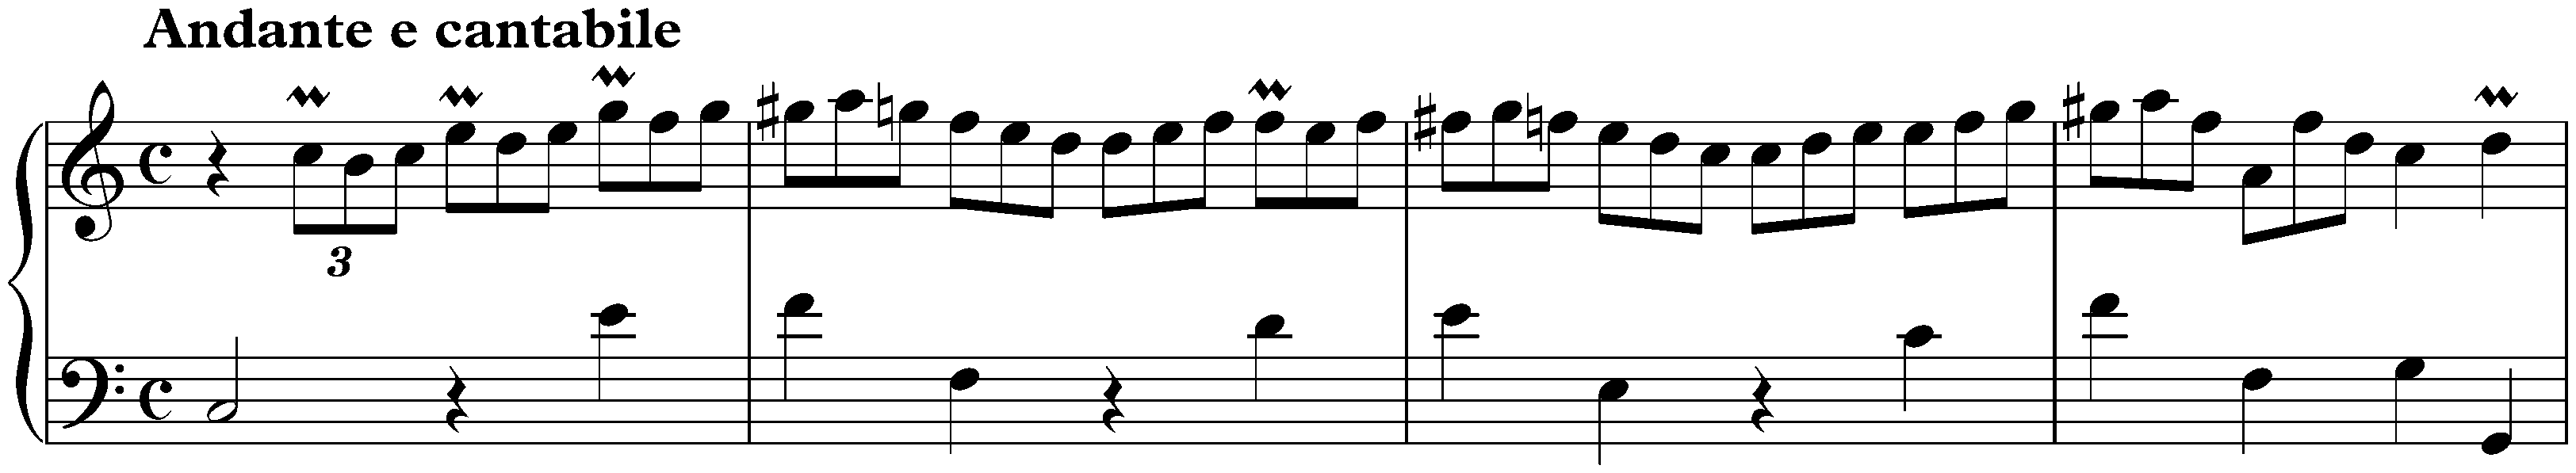 Sonata in C major, K. 485